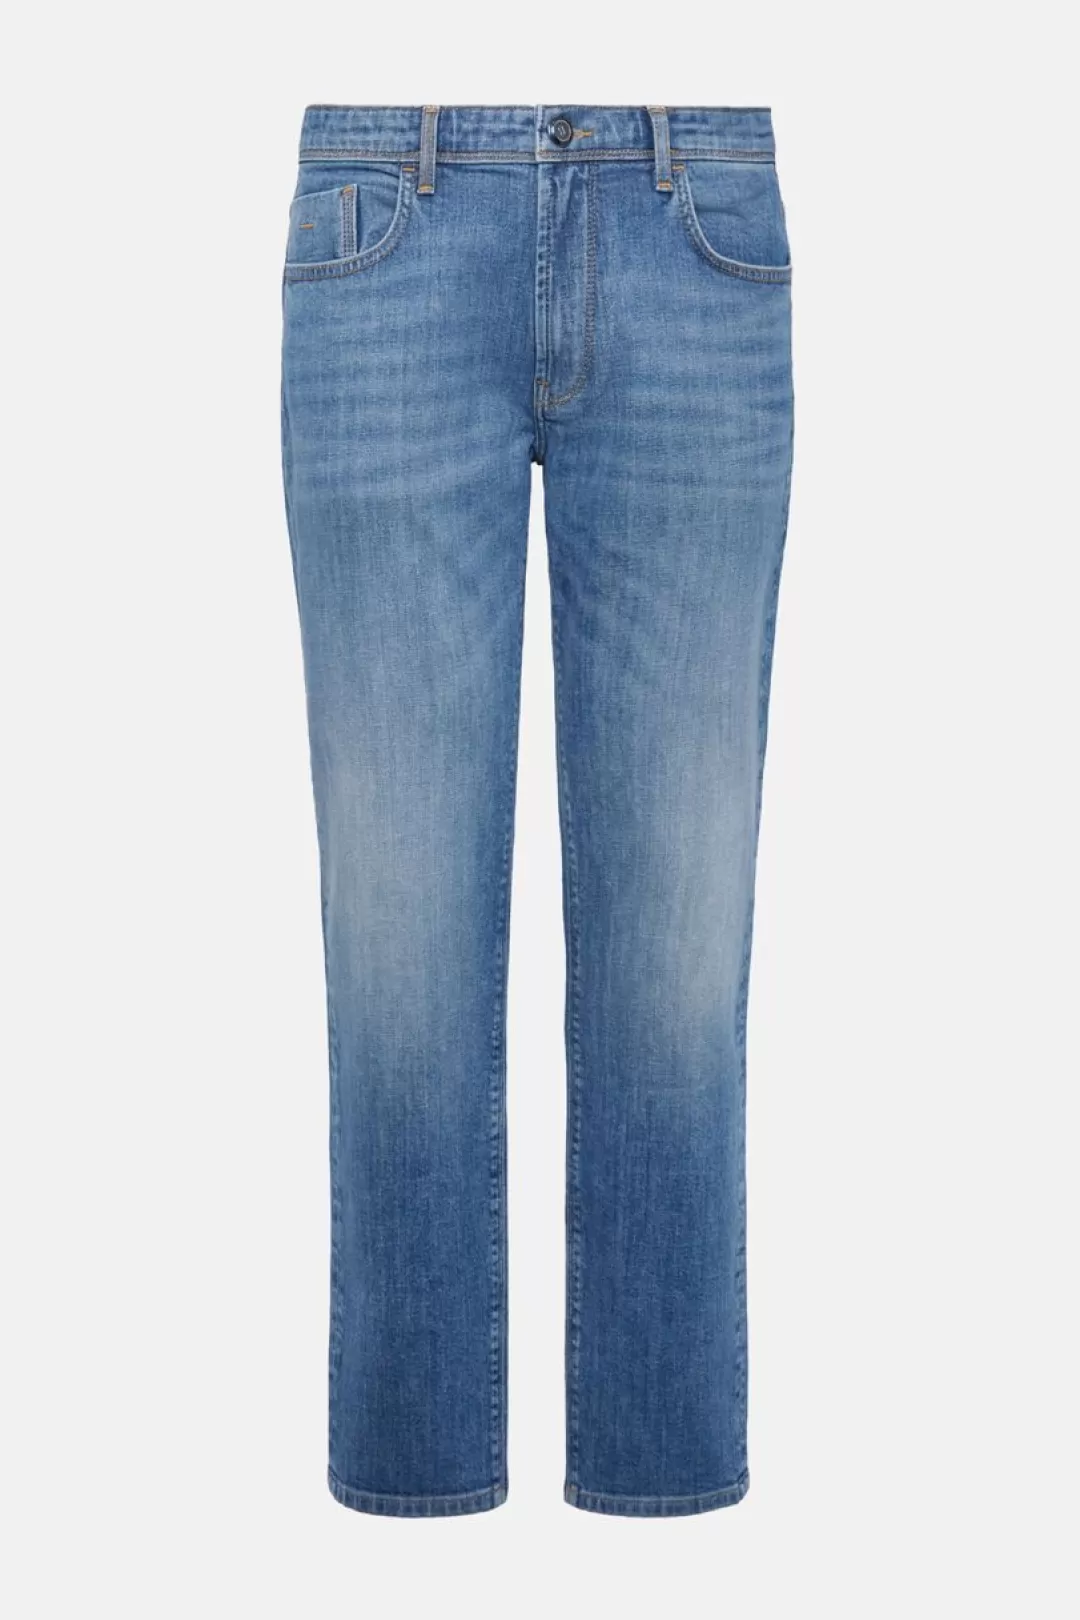 Boggi Jeans In Denim Elasticizzato Blu Scuro Store